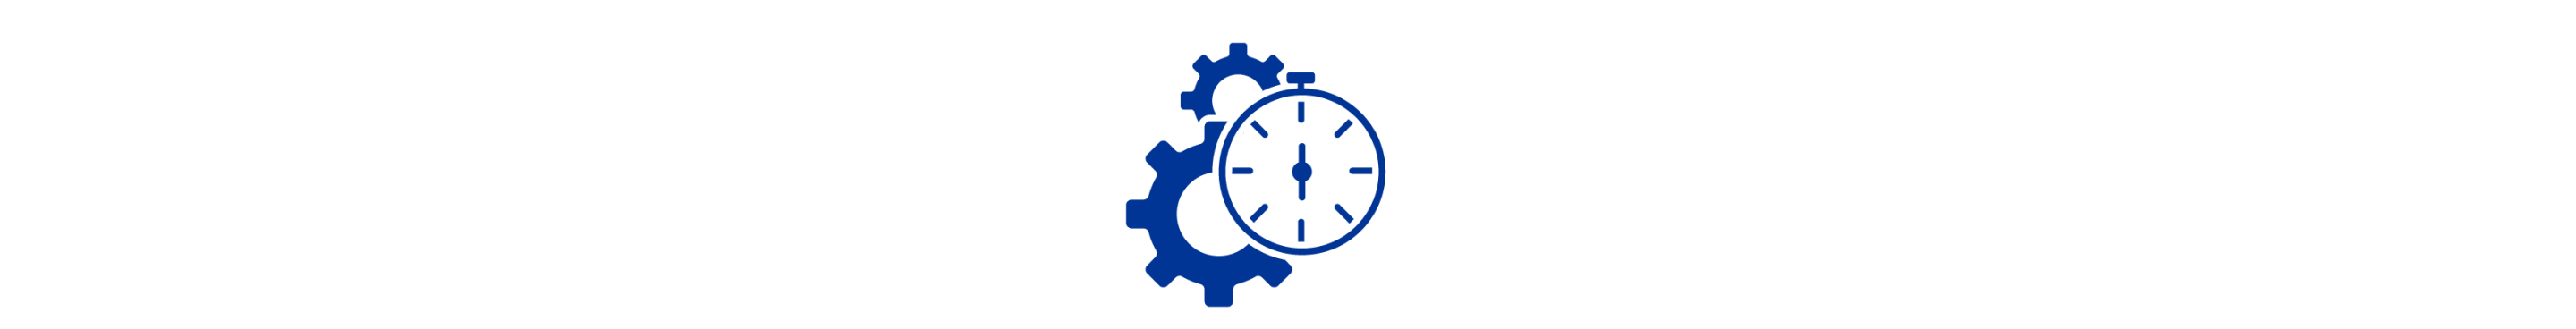 Icono azul de dos marchas detrás de un cronómetro.